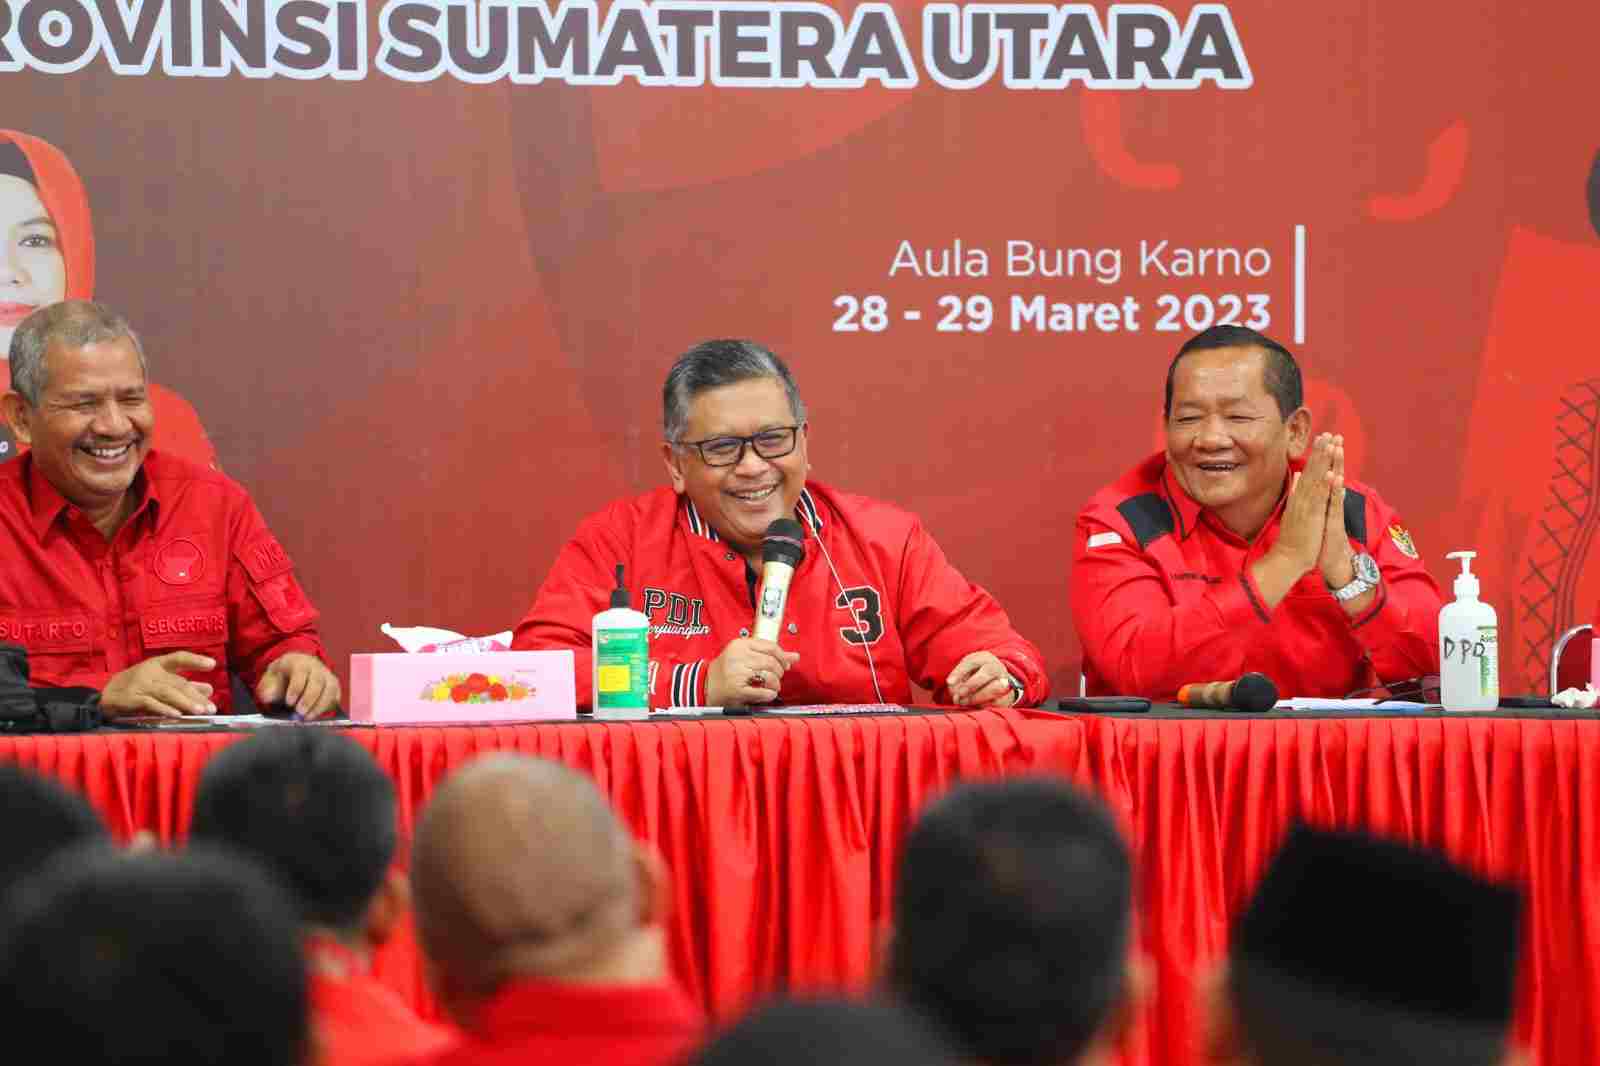 Pimpin Rapat Konsolidasi PDIP dari Medan, Hasto Sampaikan Pesan Megawati Soal Teguh Berideologi